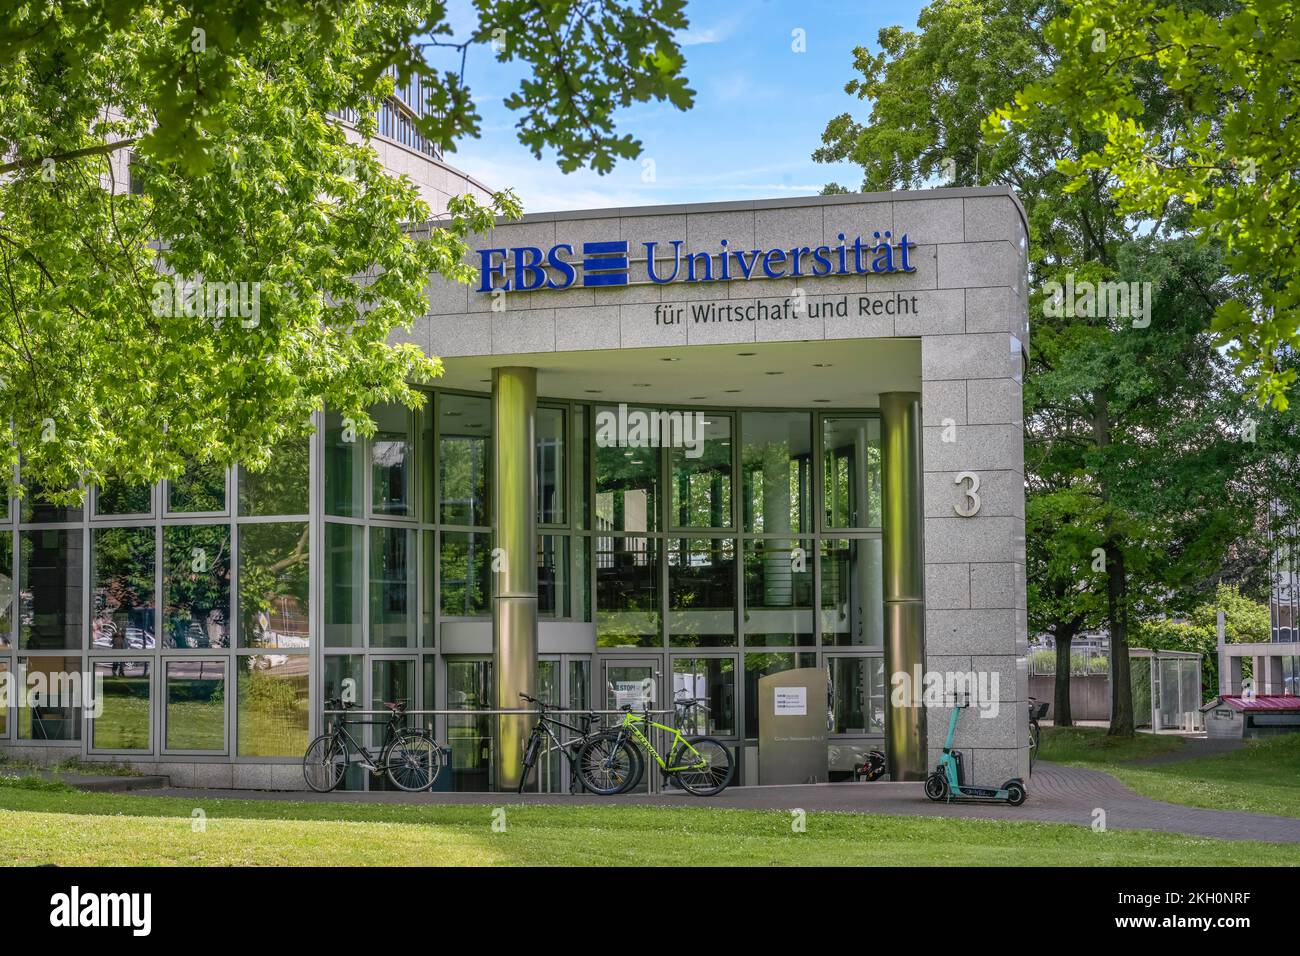 EBS Universität für Wirtschaft und Recht, Gustav-Stresemann-Ring, Wiesbaden, Hessen, Deutschland Foto Stock